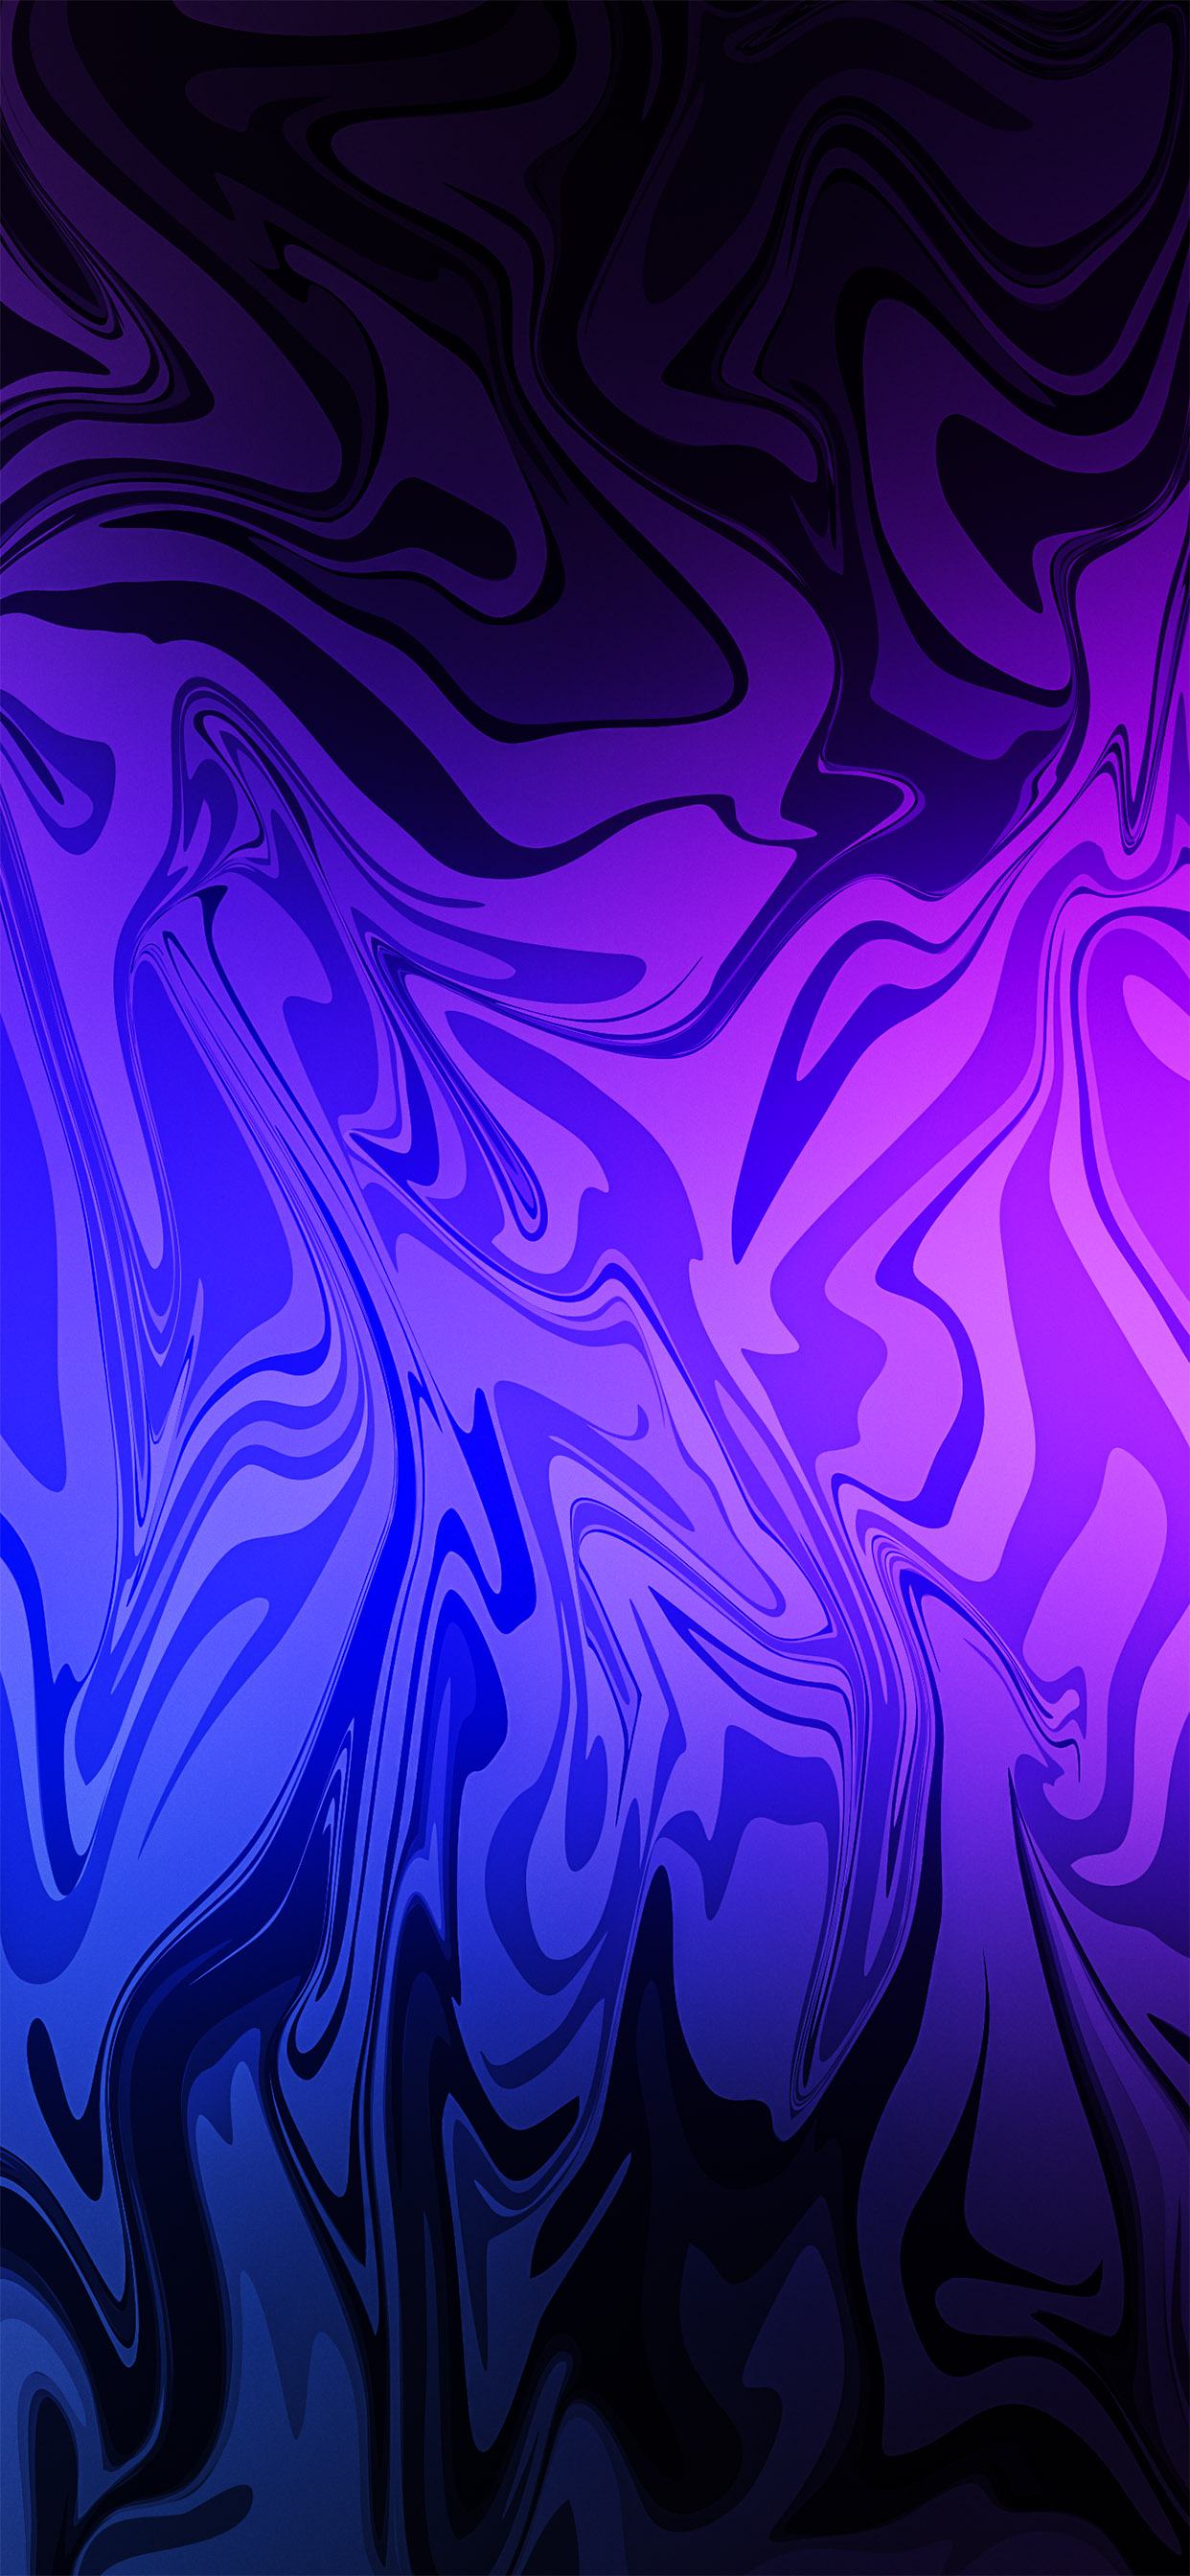 Màu xanh, tím và xanh da trời của nền Electric Background Purple đượm chất chụp ảnh chuyên nghiệp sẽ khiến bạn bị thu hút ngay lập tức. Với kết cấu vải sợi và chất lỏng thông minh, hình nền này hoàn toàn có thể tạo nên một bức hình tràn đầy sức sống cho bạn.